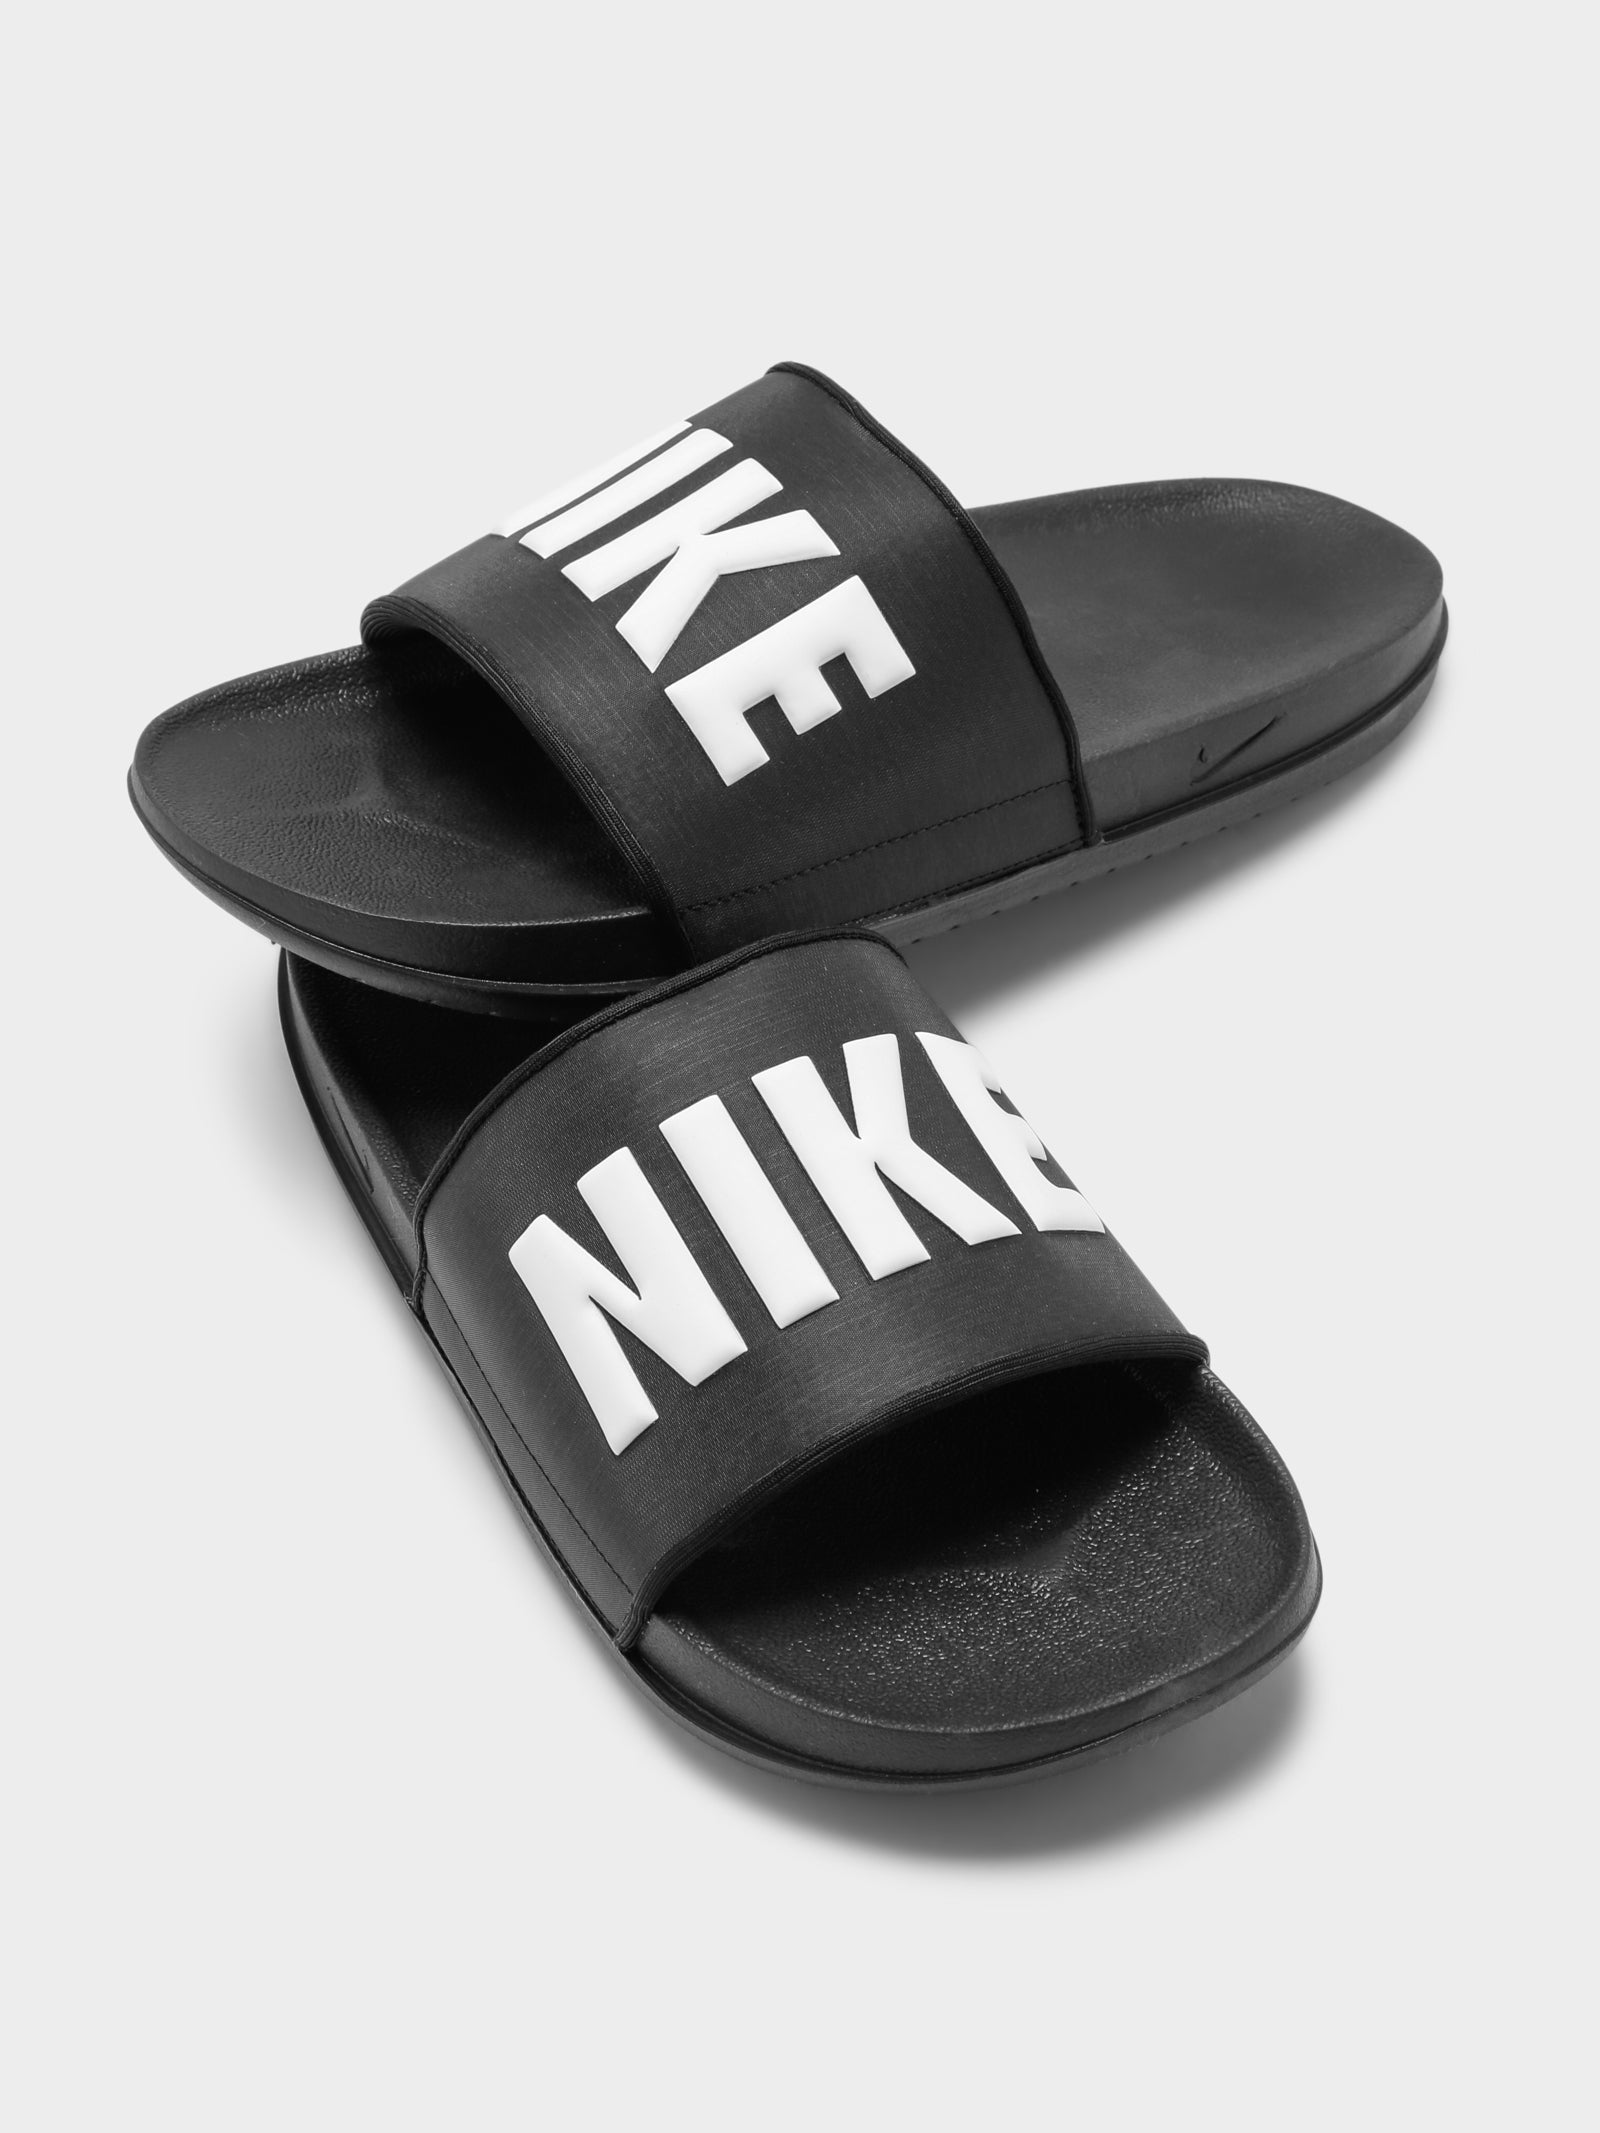 Mens Nike Offcourt Slides in Black & White